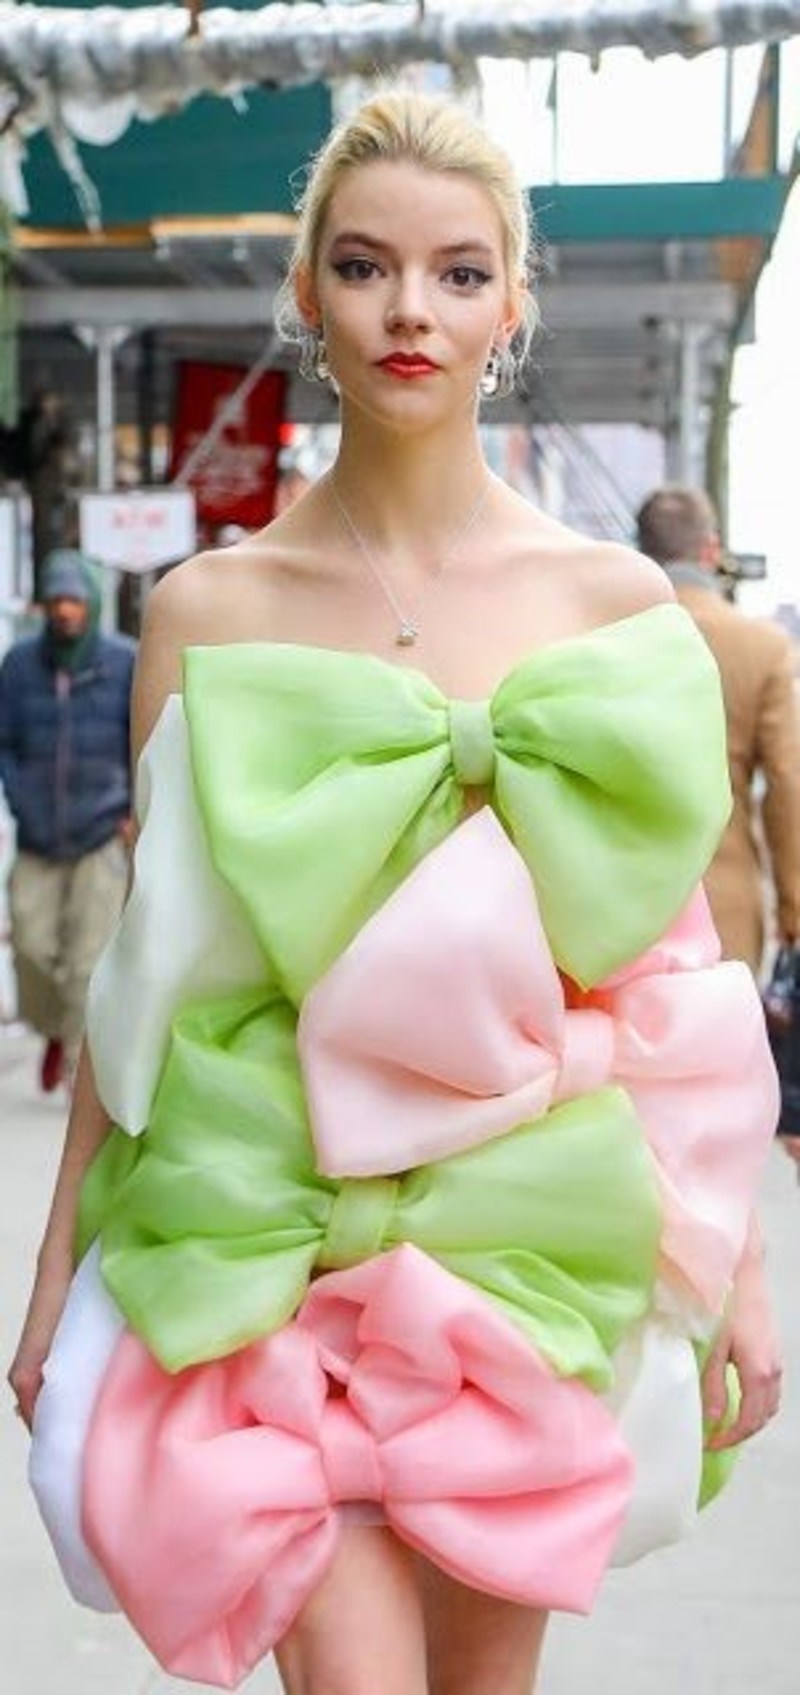 Έτσι μοιάζει το να κυκλοφορείς στους δρόμους της Νέας Υόρκης με Celia Kritharioti φόρεμα 